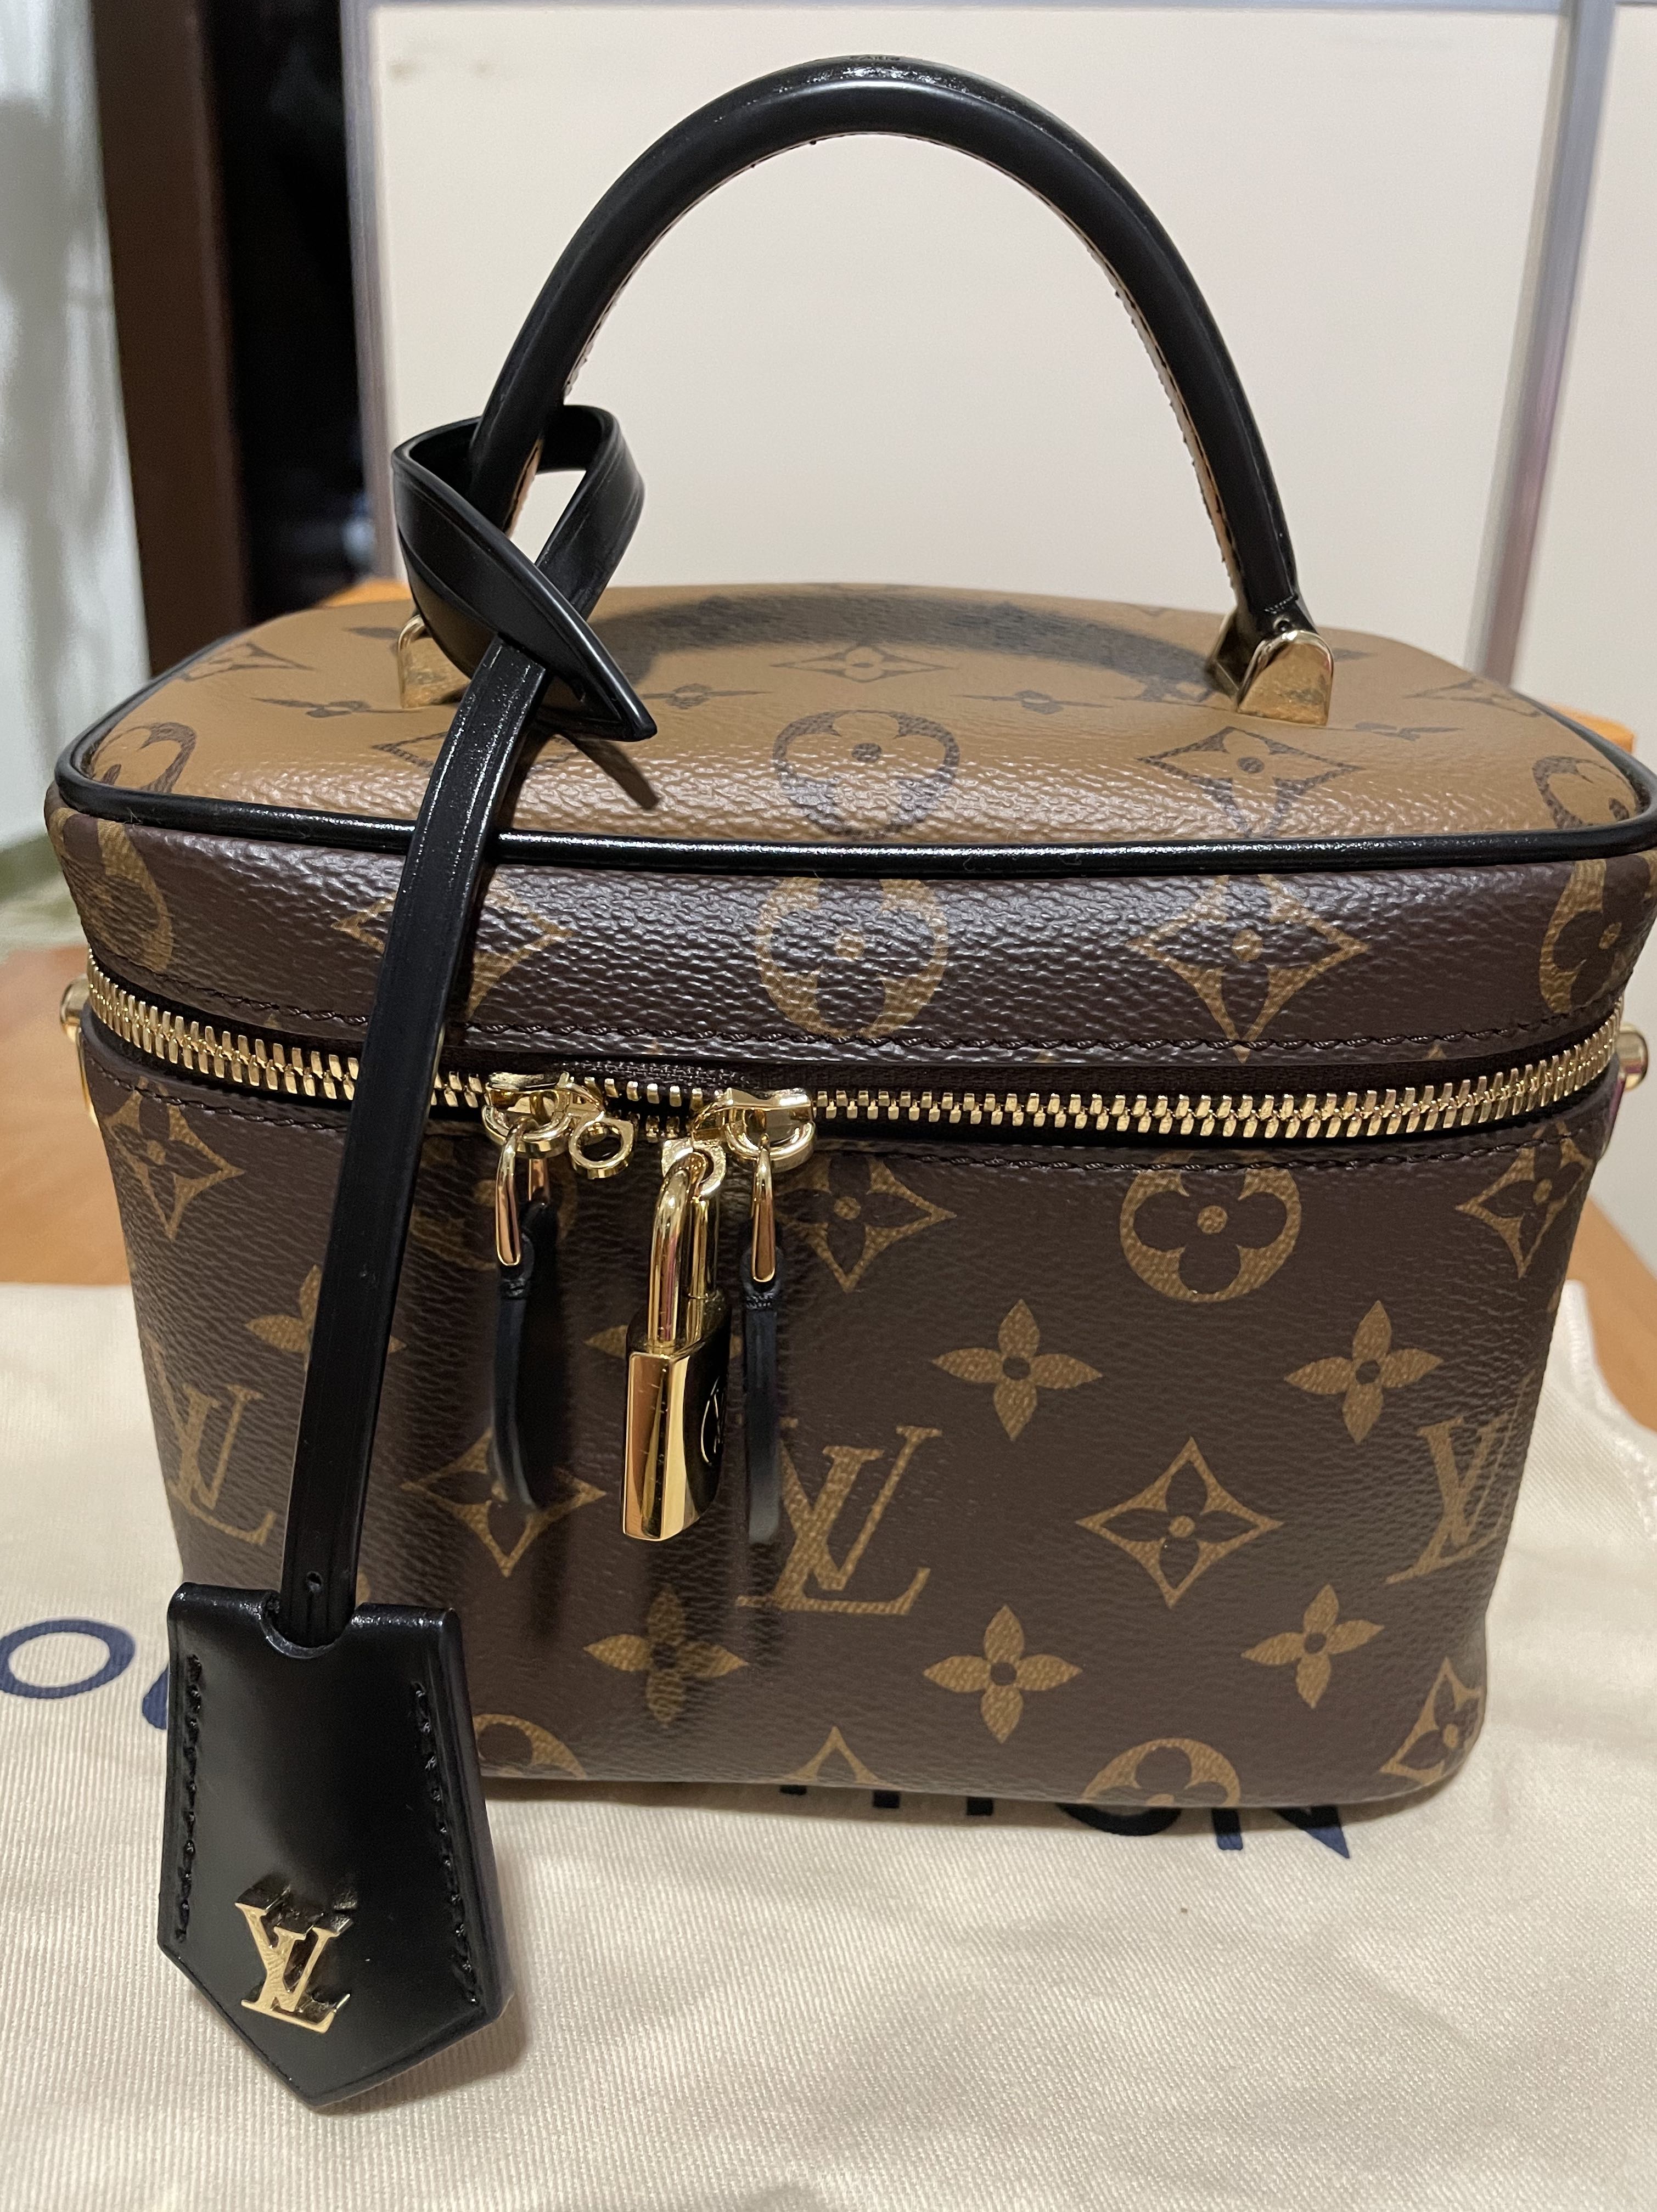 UNUSED LOUIS VUITTON Monogram Vernis Cannes PM Vanity Bag 2 way bag M53997